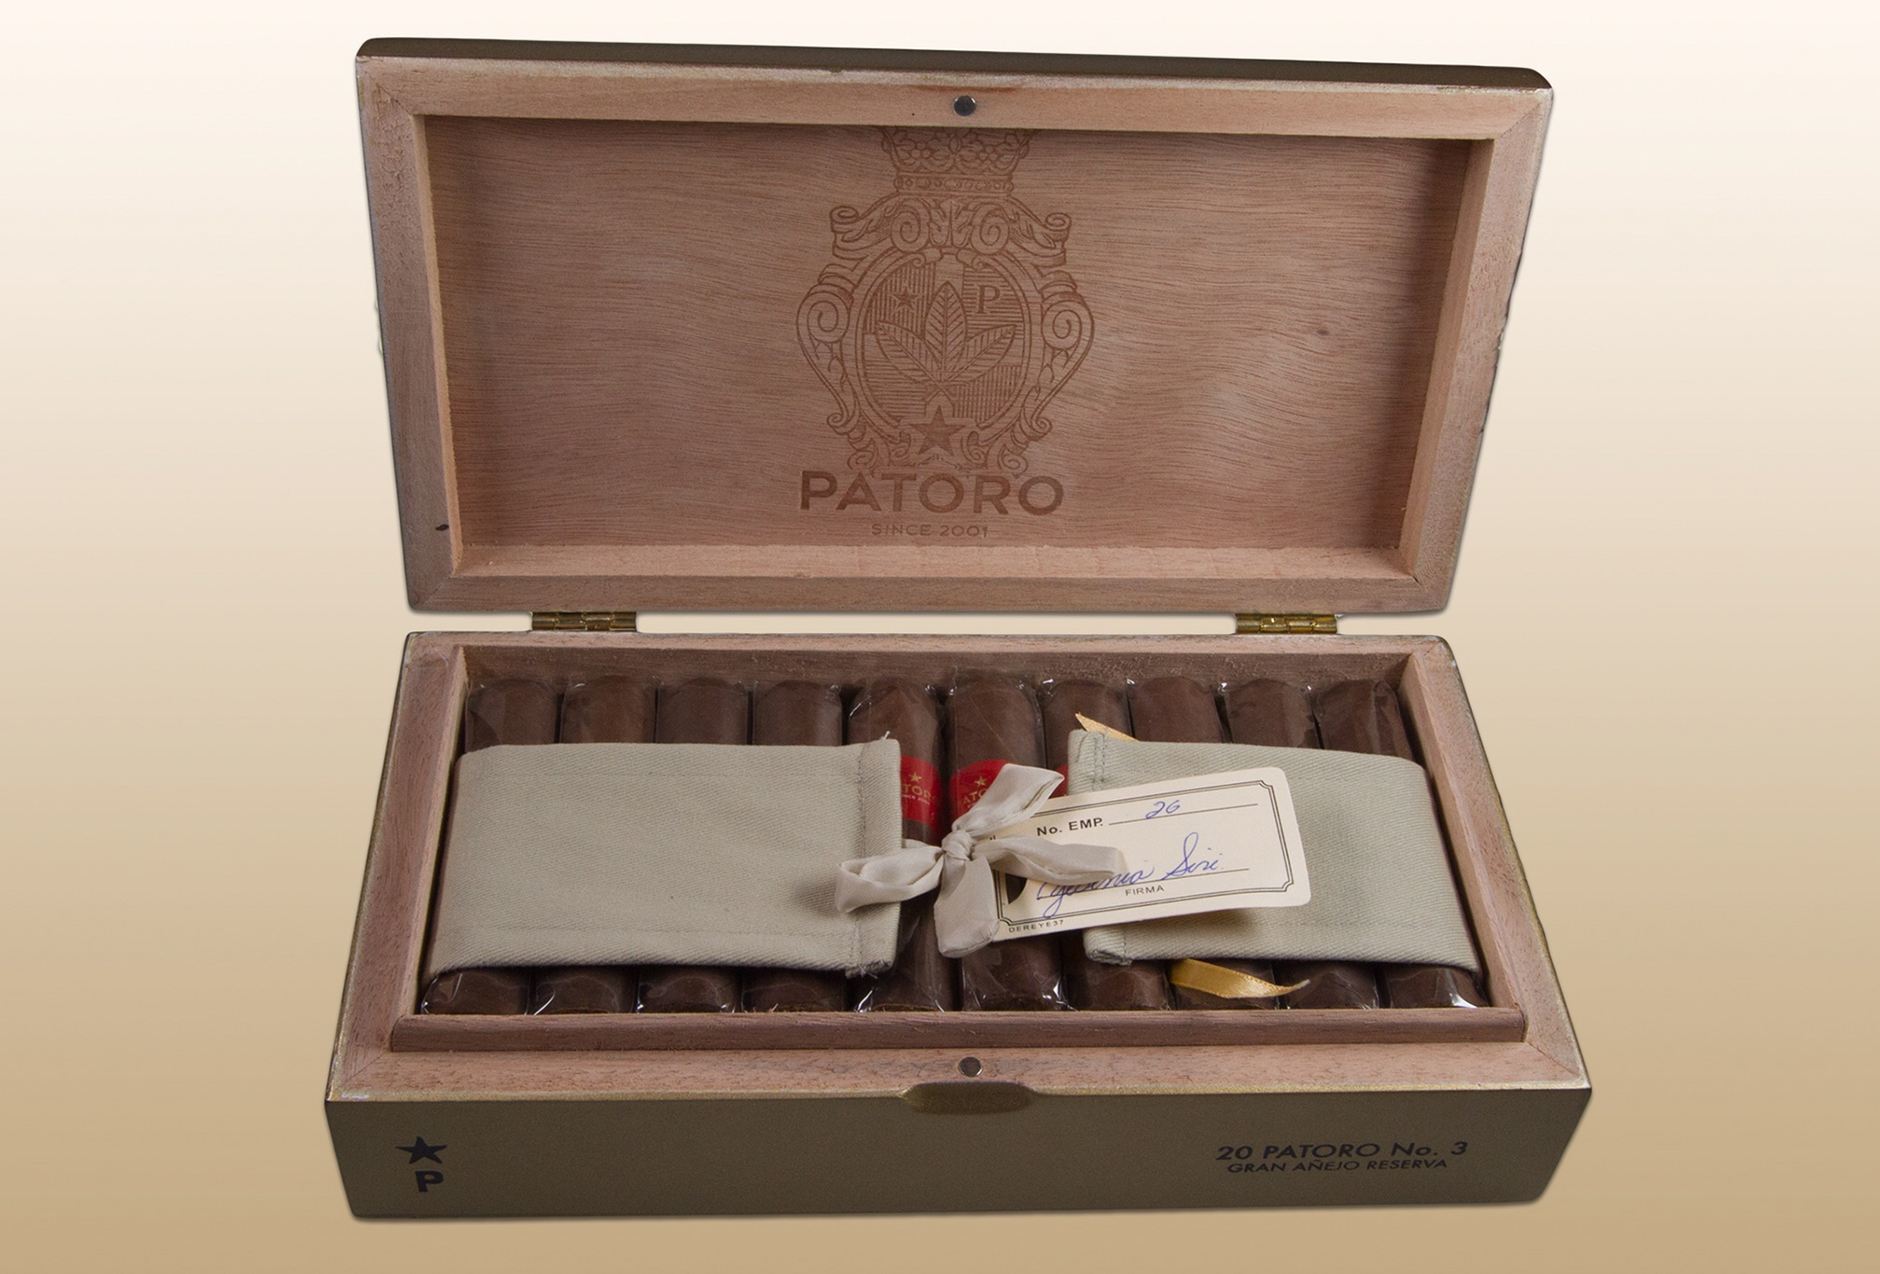 Patoro Gran Anejo Reserva open box feature